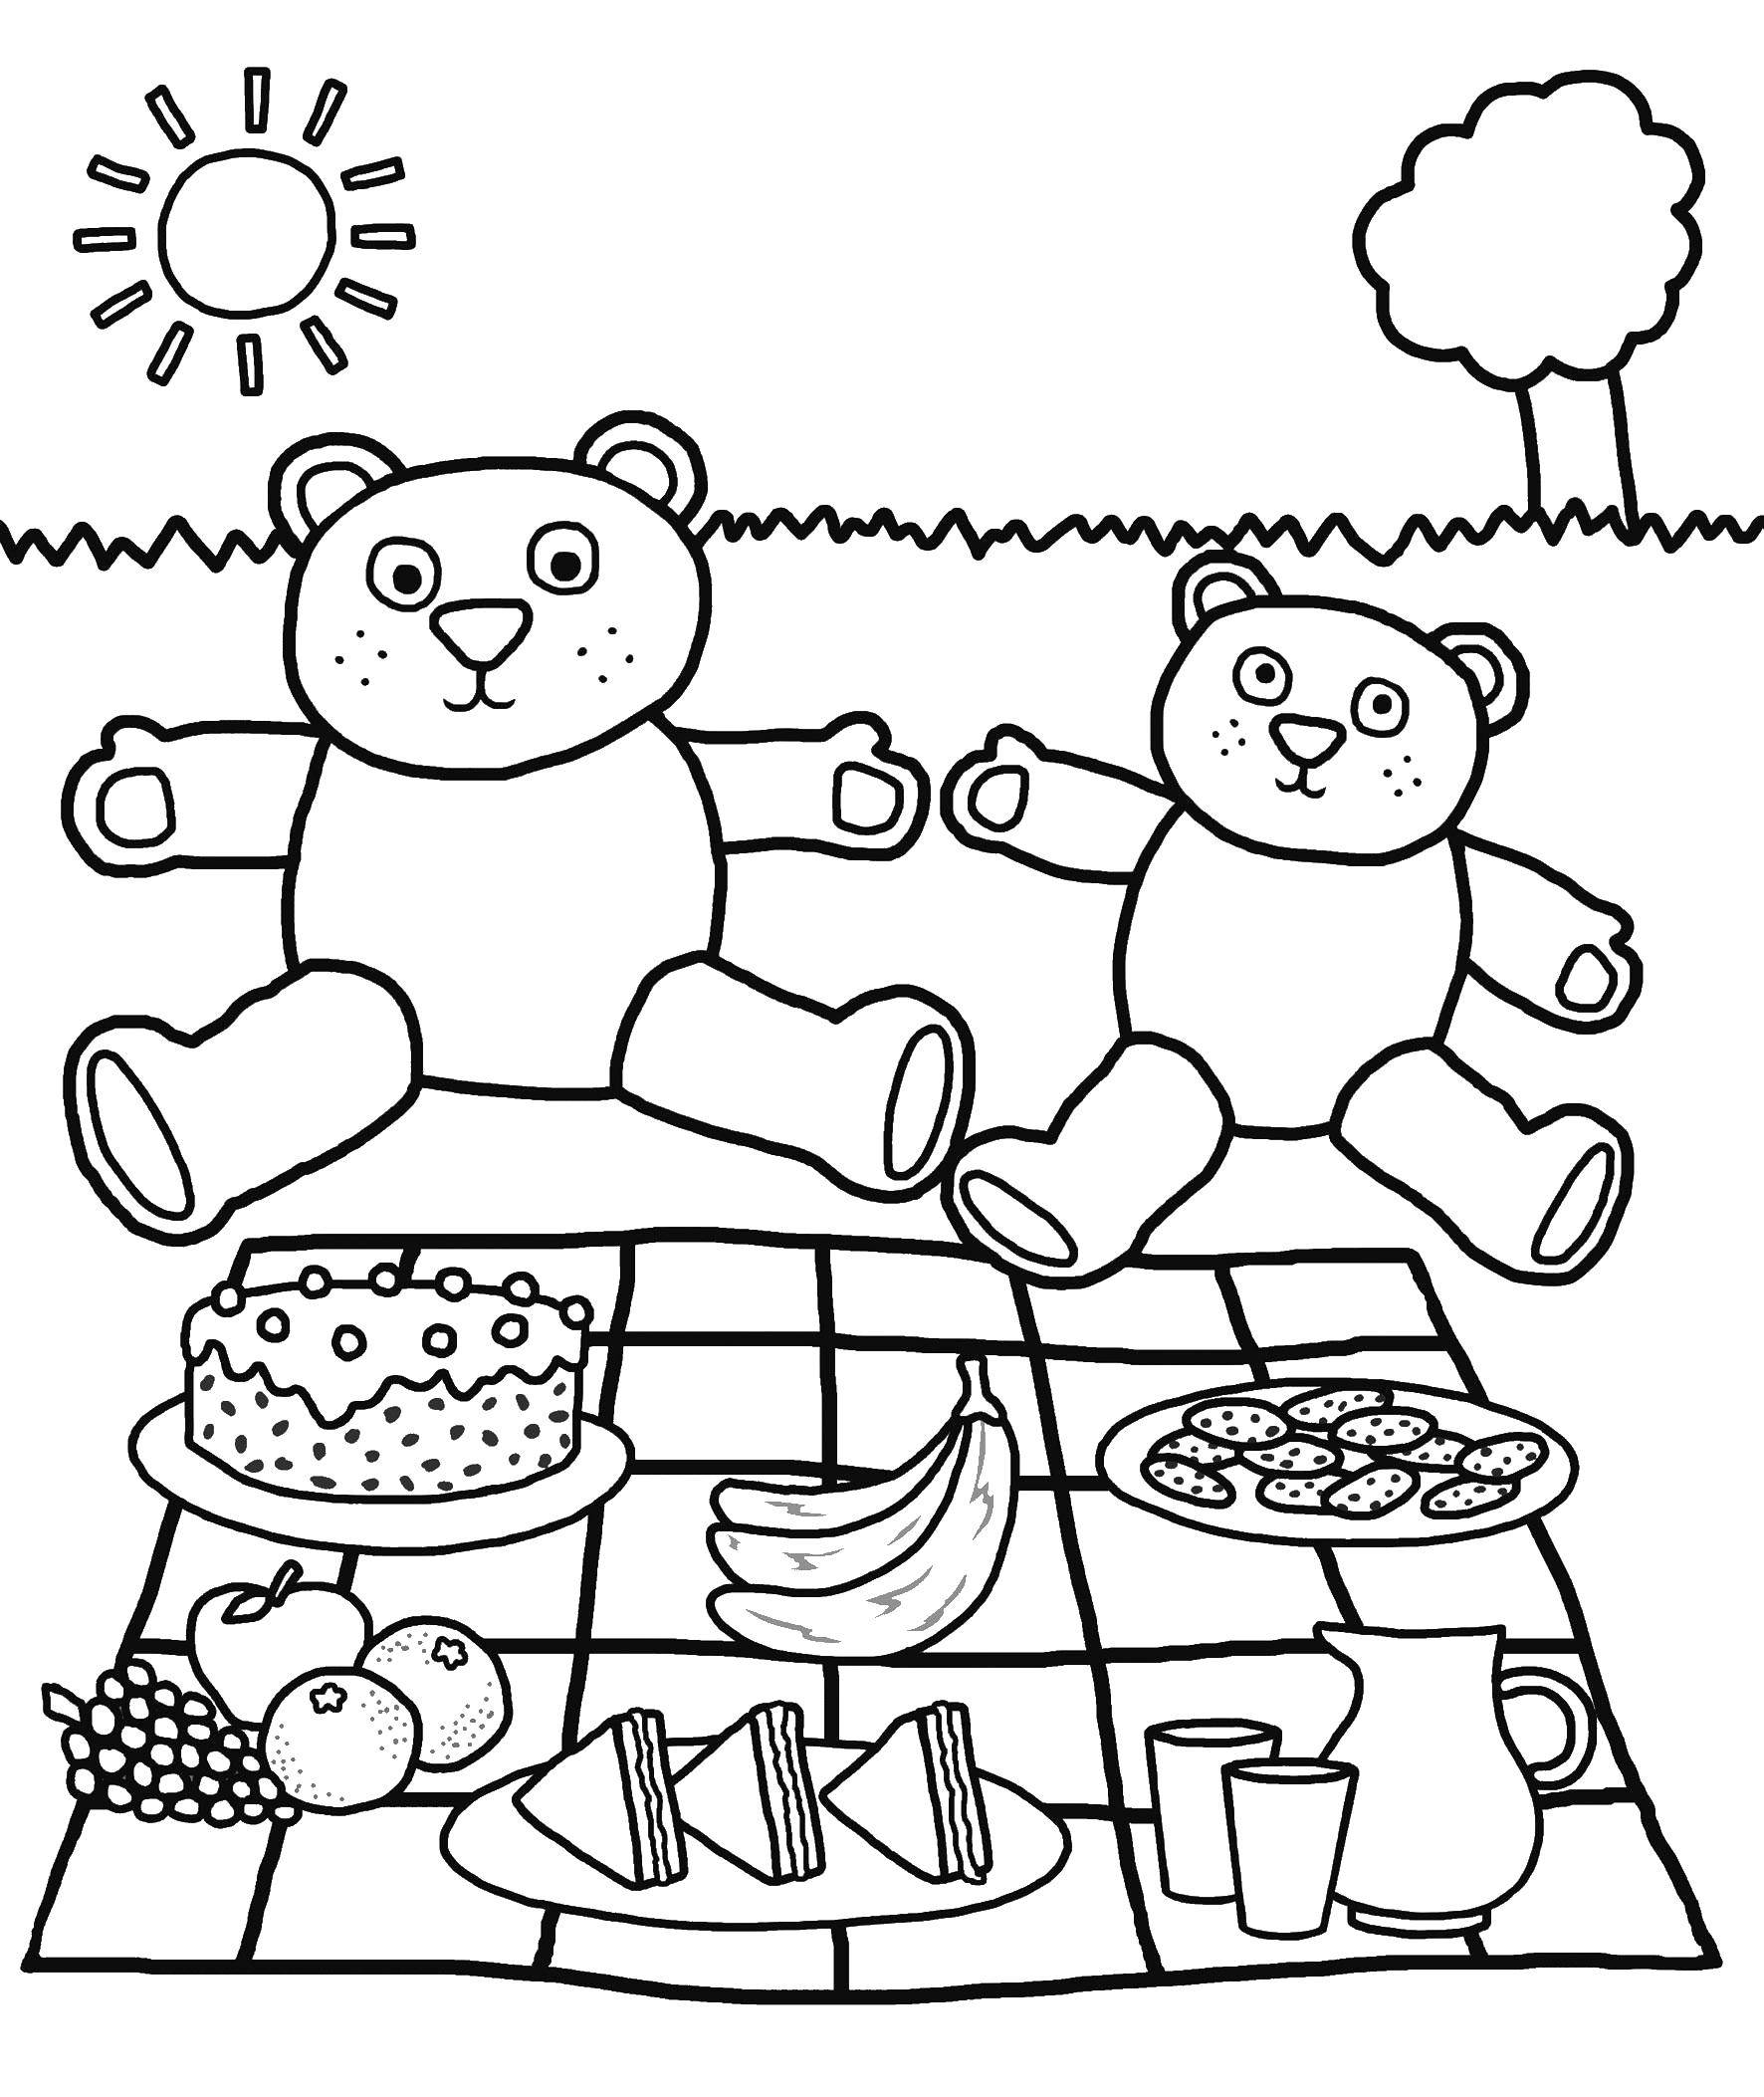 Coloring Bears at the picnic. Category nature. Tags:  bear, picnic.